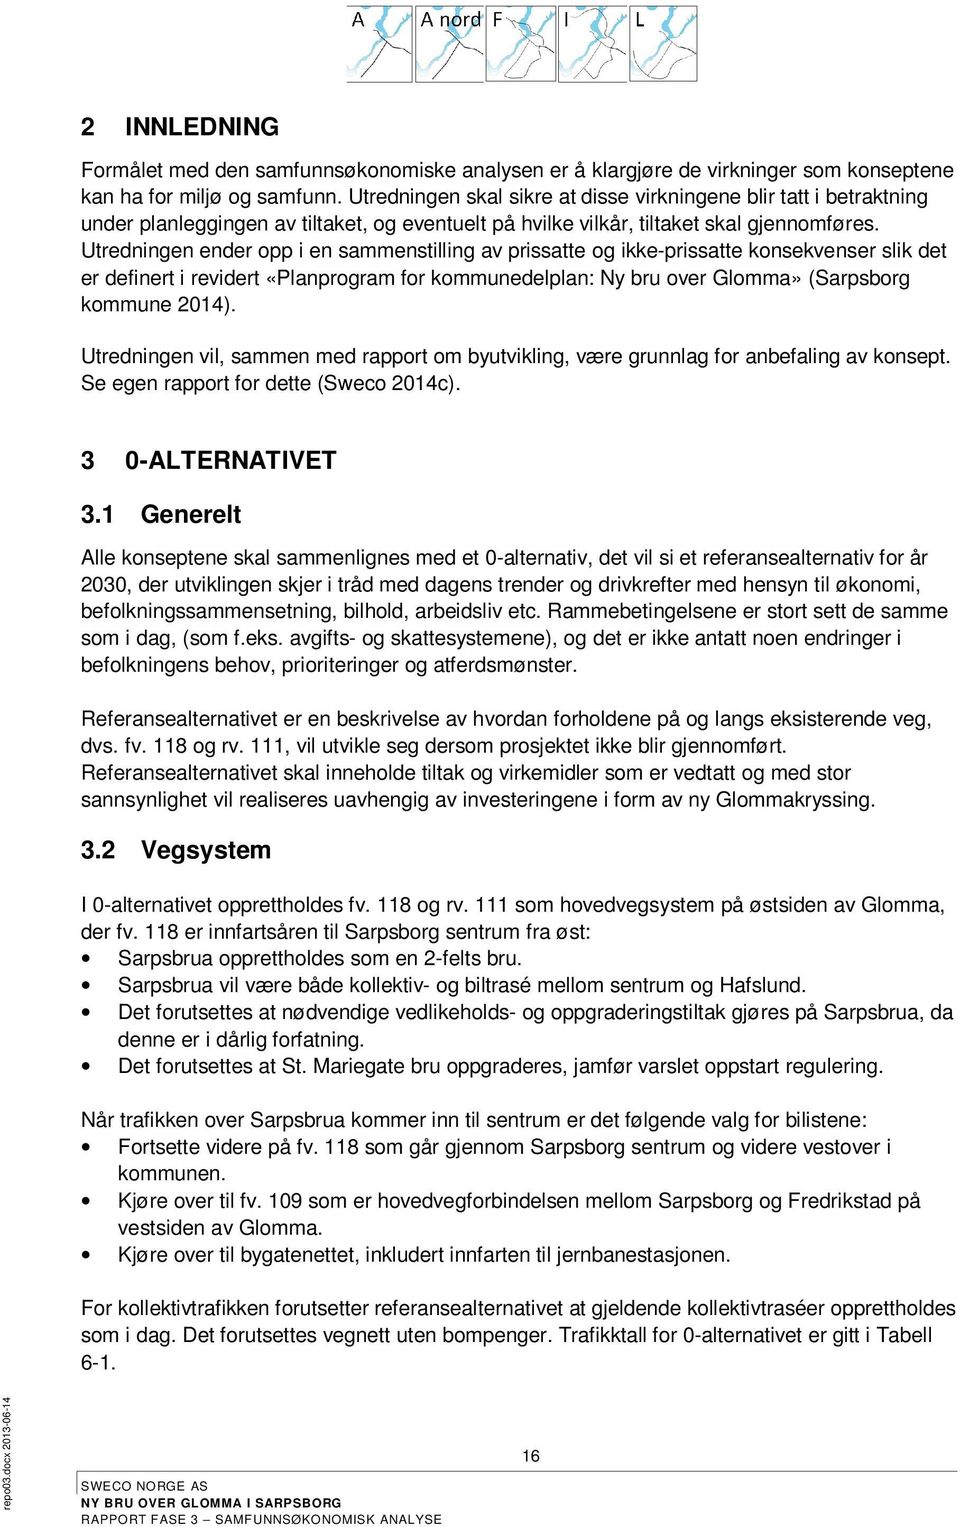 Utredningen ender opp i en sammenstilling av prissatte og ikke-prissatte konsekvenser slik det er definert i revidert «Planprogram for kommunedelplan: Ny bru over Glomma» (Sarpsborg kommune 2014).